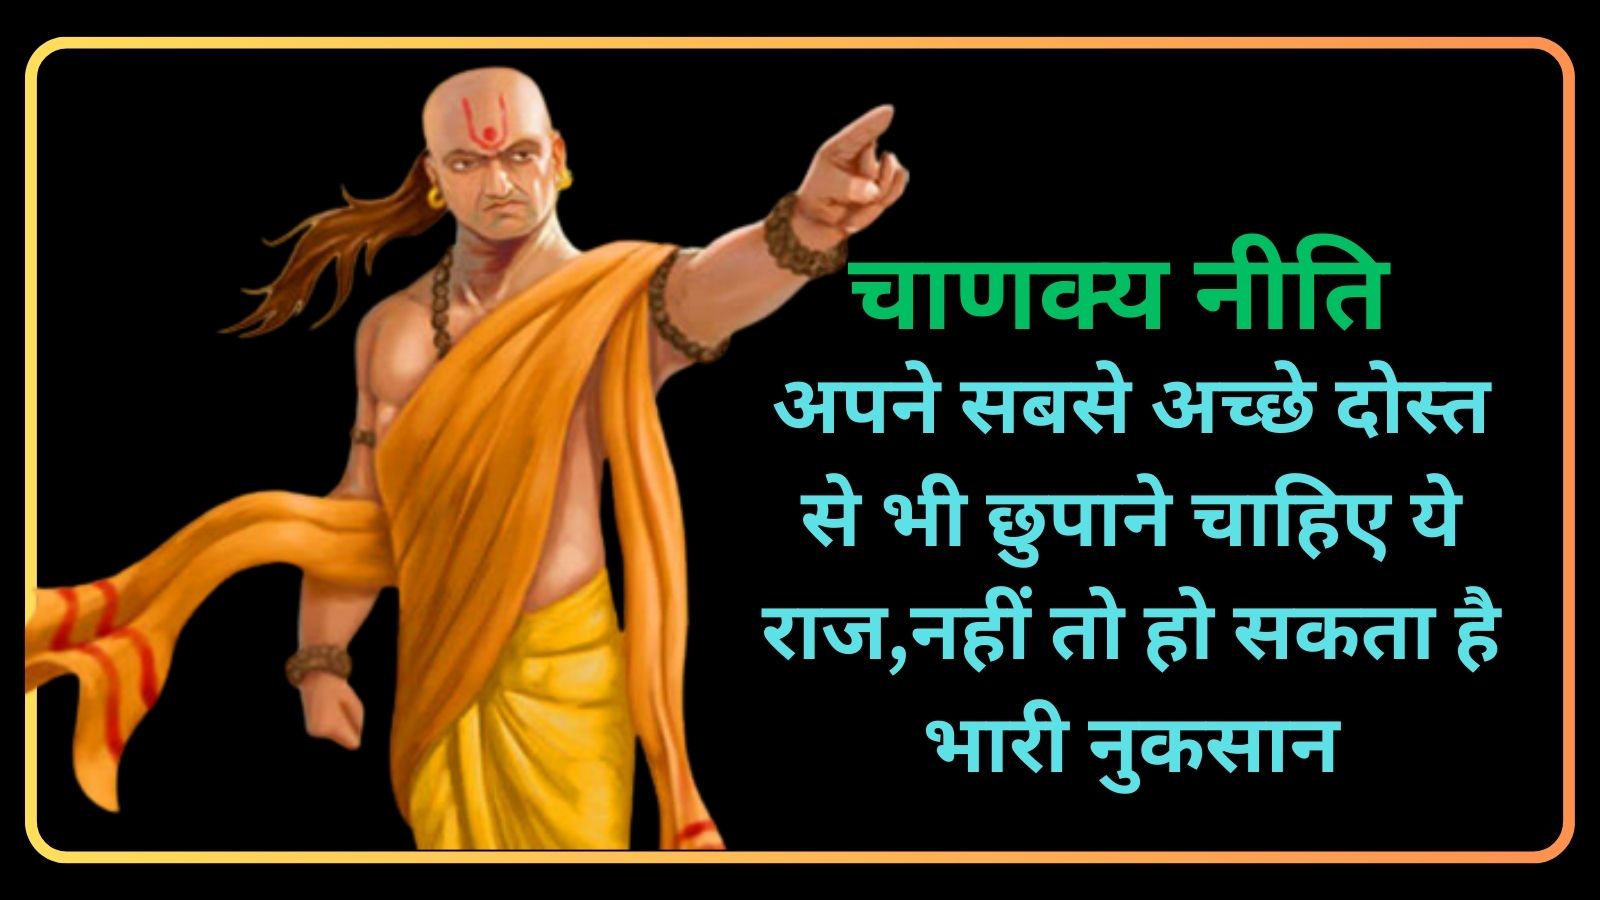 Chanakya Niti:अपने सबसे अच्छे दोस्त से भी छुपाने चाहिए ये राज,नहीं तो हो सकता है भारी नुकसान